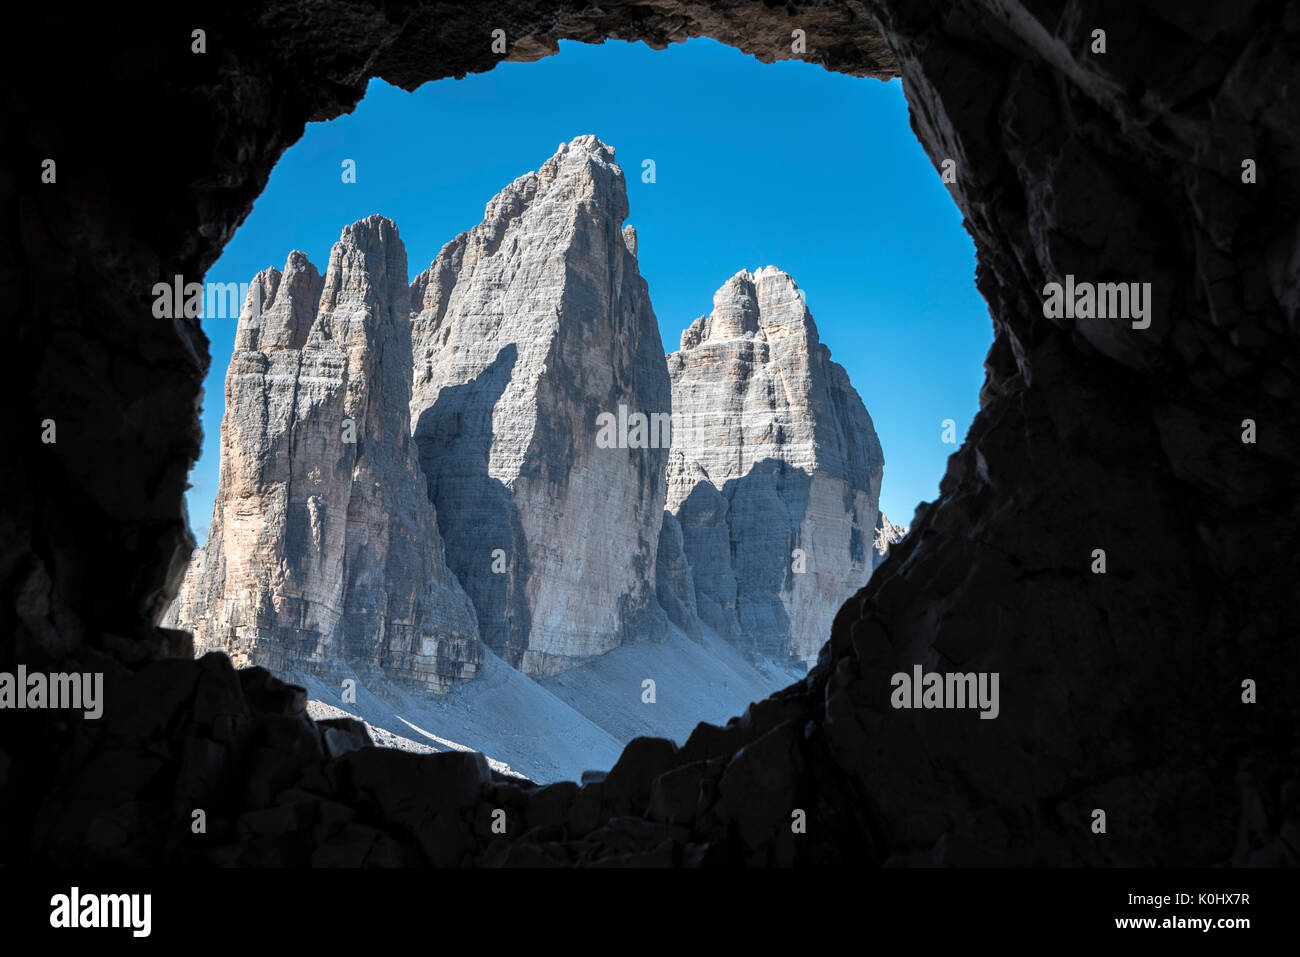 Di Sesto, Dolomiti, Alto Adige, provincia di Bolzano, Italia. Le Tre Cime di Lavaredo/Drei Zinnen attraverso una finestra di roccia dalla prima guerra mondiale Foto Stock